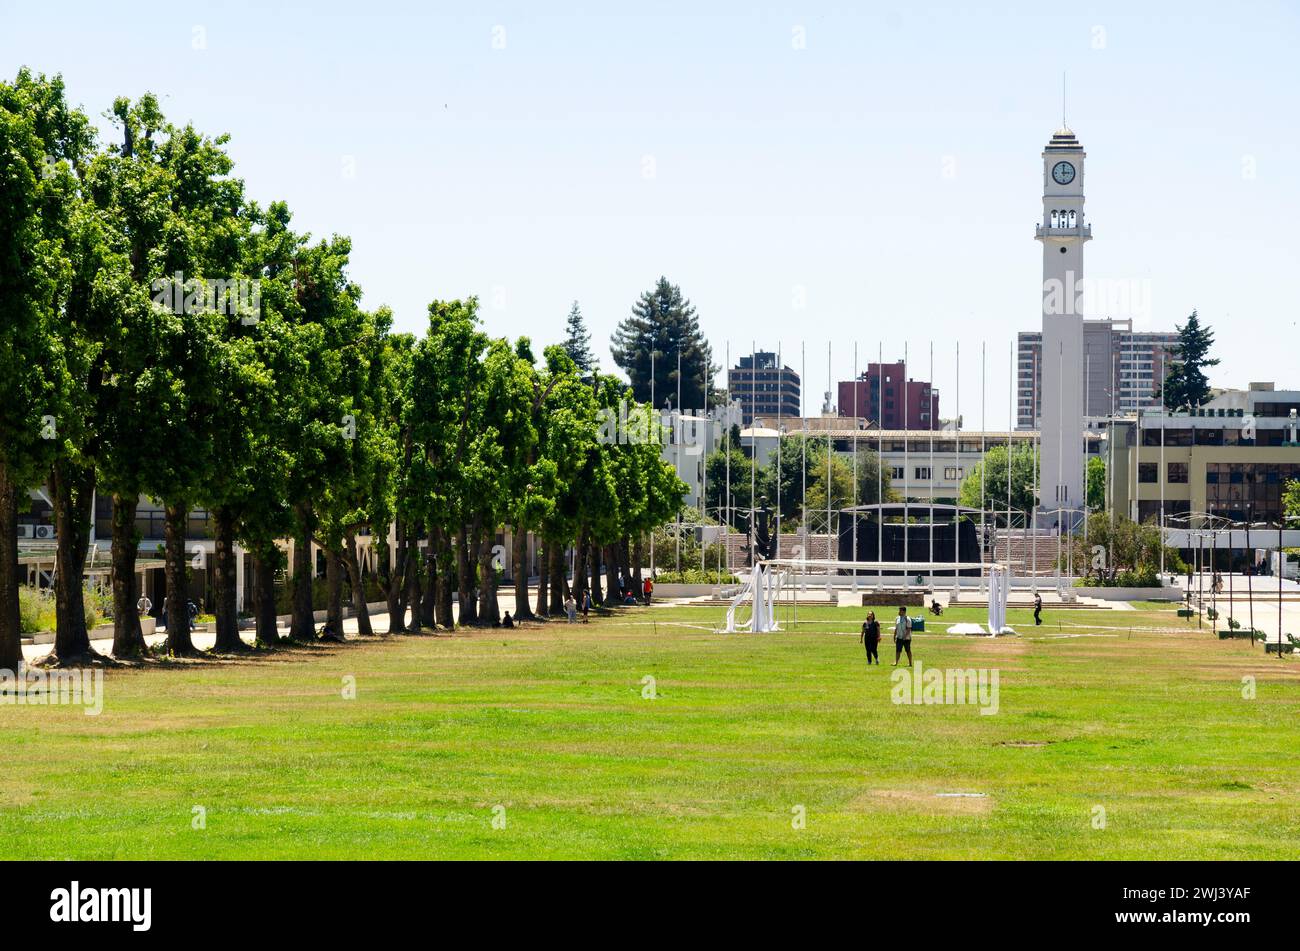 Vue panoramique sur le parc central de l'Universidad de Concepcion. La tour de guet et le forum en arrière-plan. Concepcion, Chili Banque D'Images